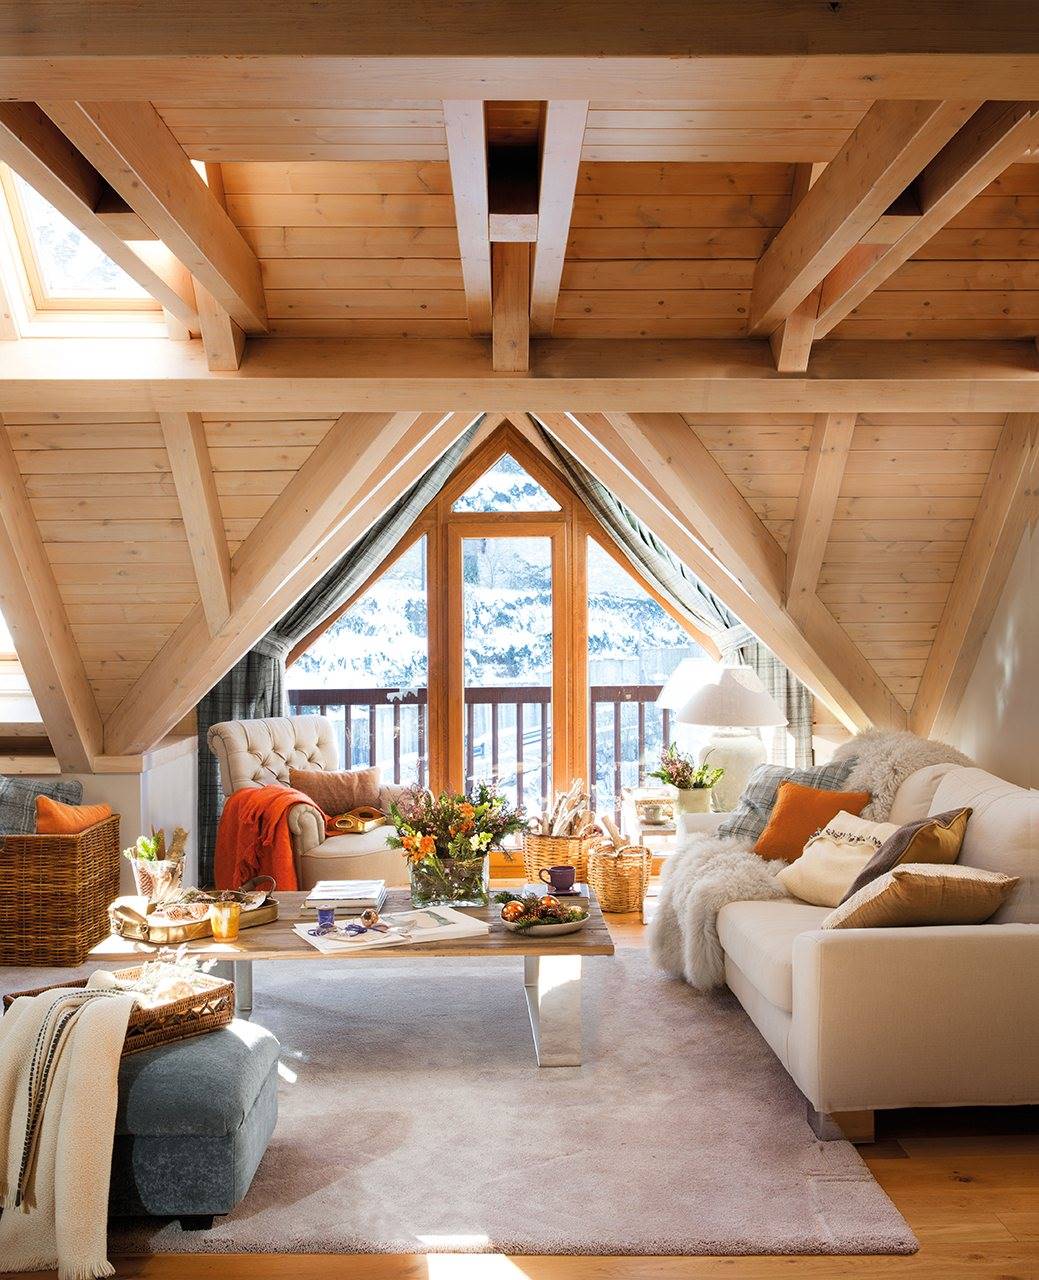 salon con techo abovedado de madera y ventana en tejado. El refugio perfecto en la nieve